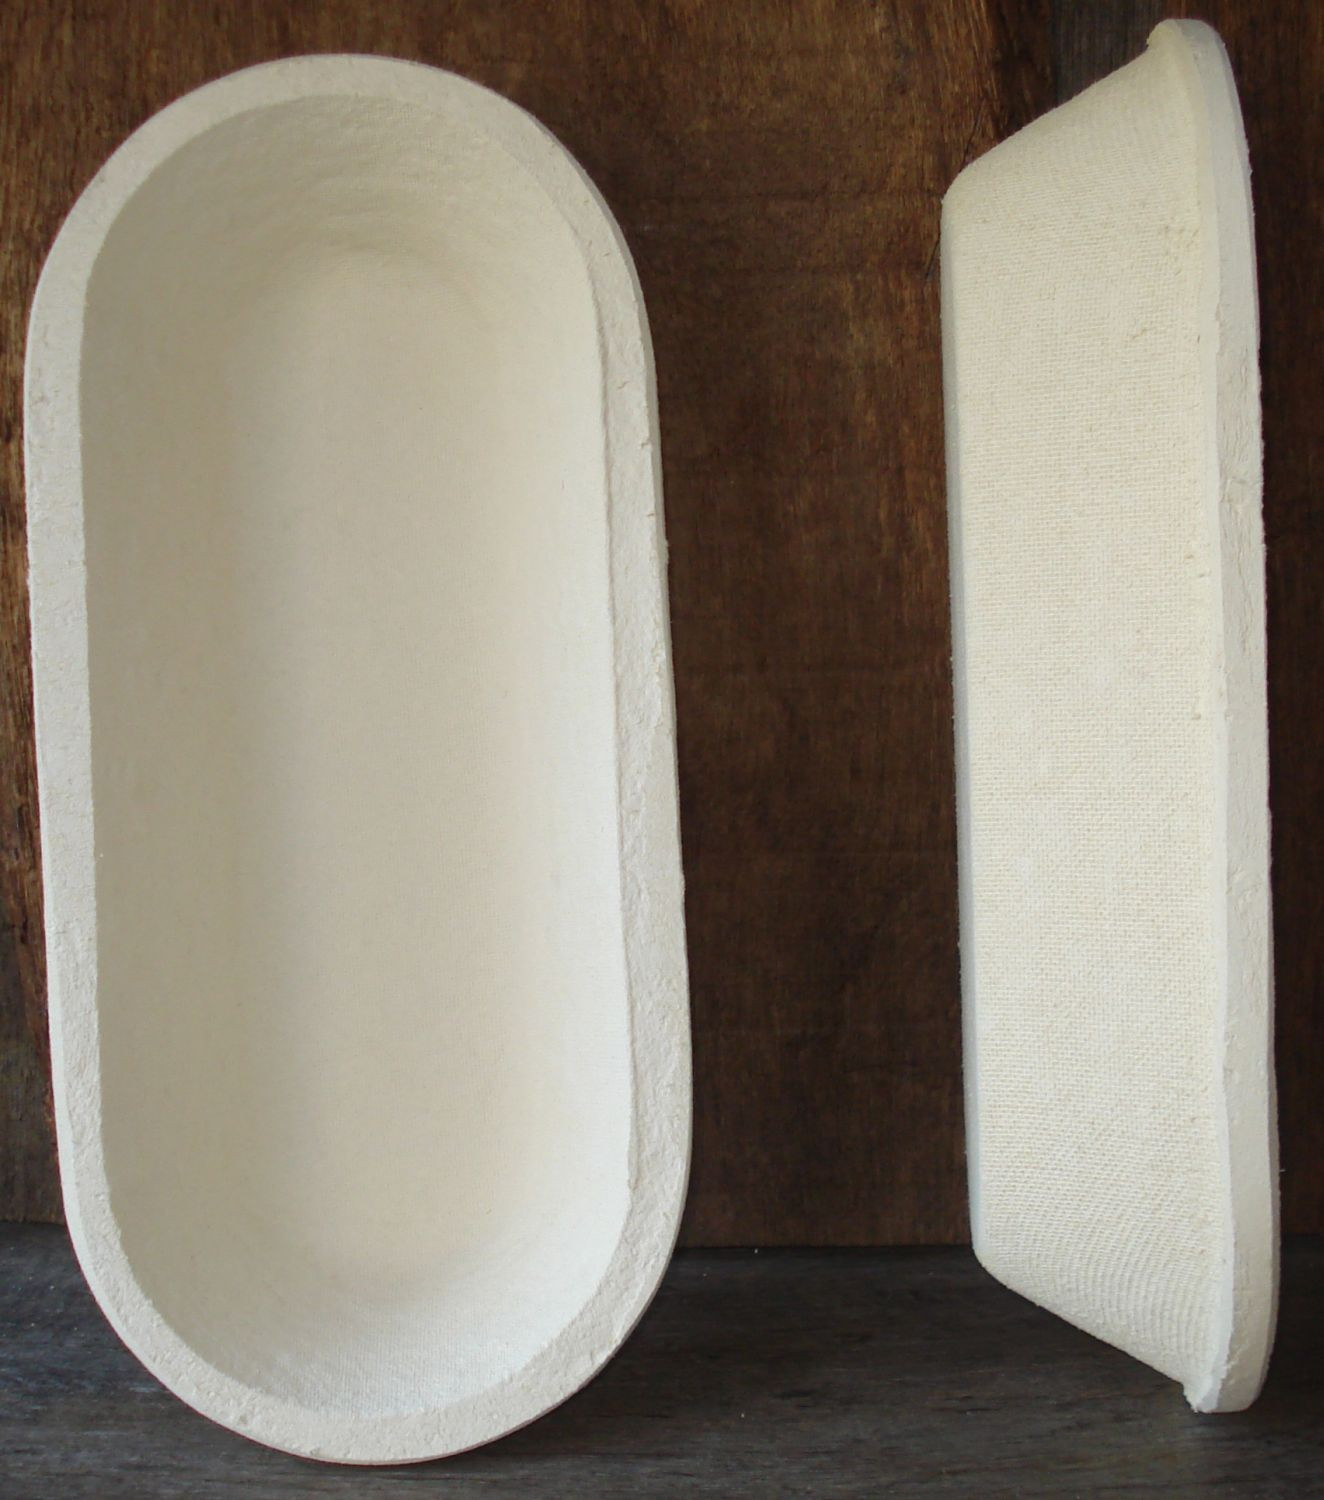 Gärkorb Gärkörbchen Simperl aus Holzschlif für 1,5 kg Brote lang oval glatt 